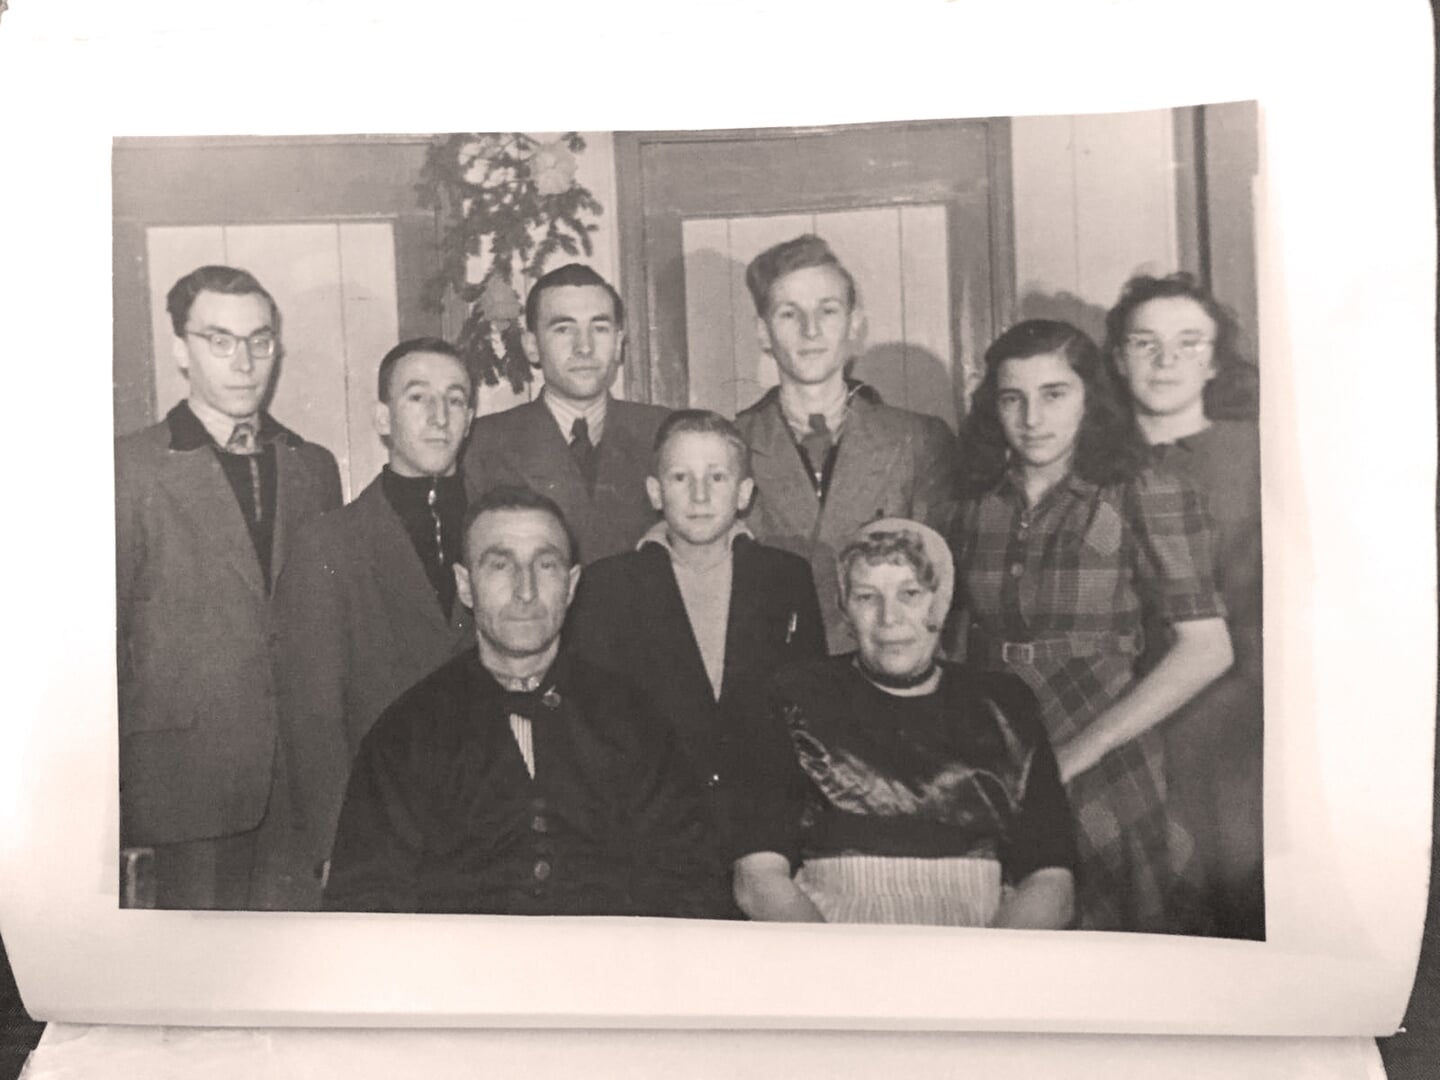 Het gezin van Mariap van Urk-Koffeman. Op de achtergrond v.l.n.r.: Evert, Jan, Ide, Tiemen, Jannie, Marrie. Op de voorgrond: vader Klaas van Urk, Albert en moeder Mariap van Urk-Koffeman.